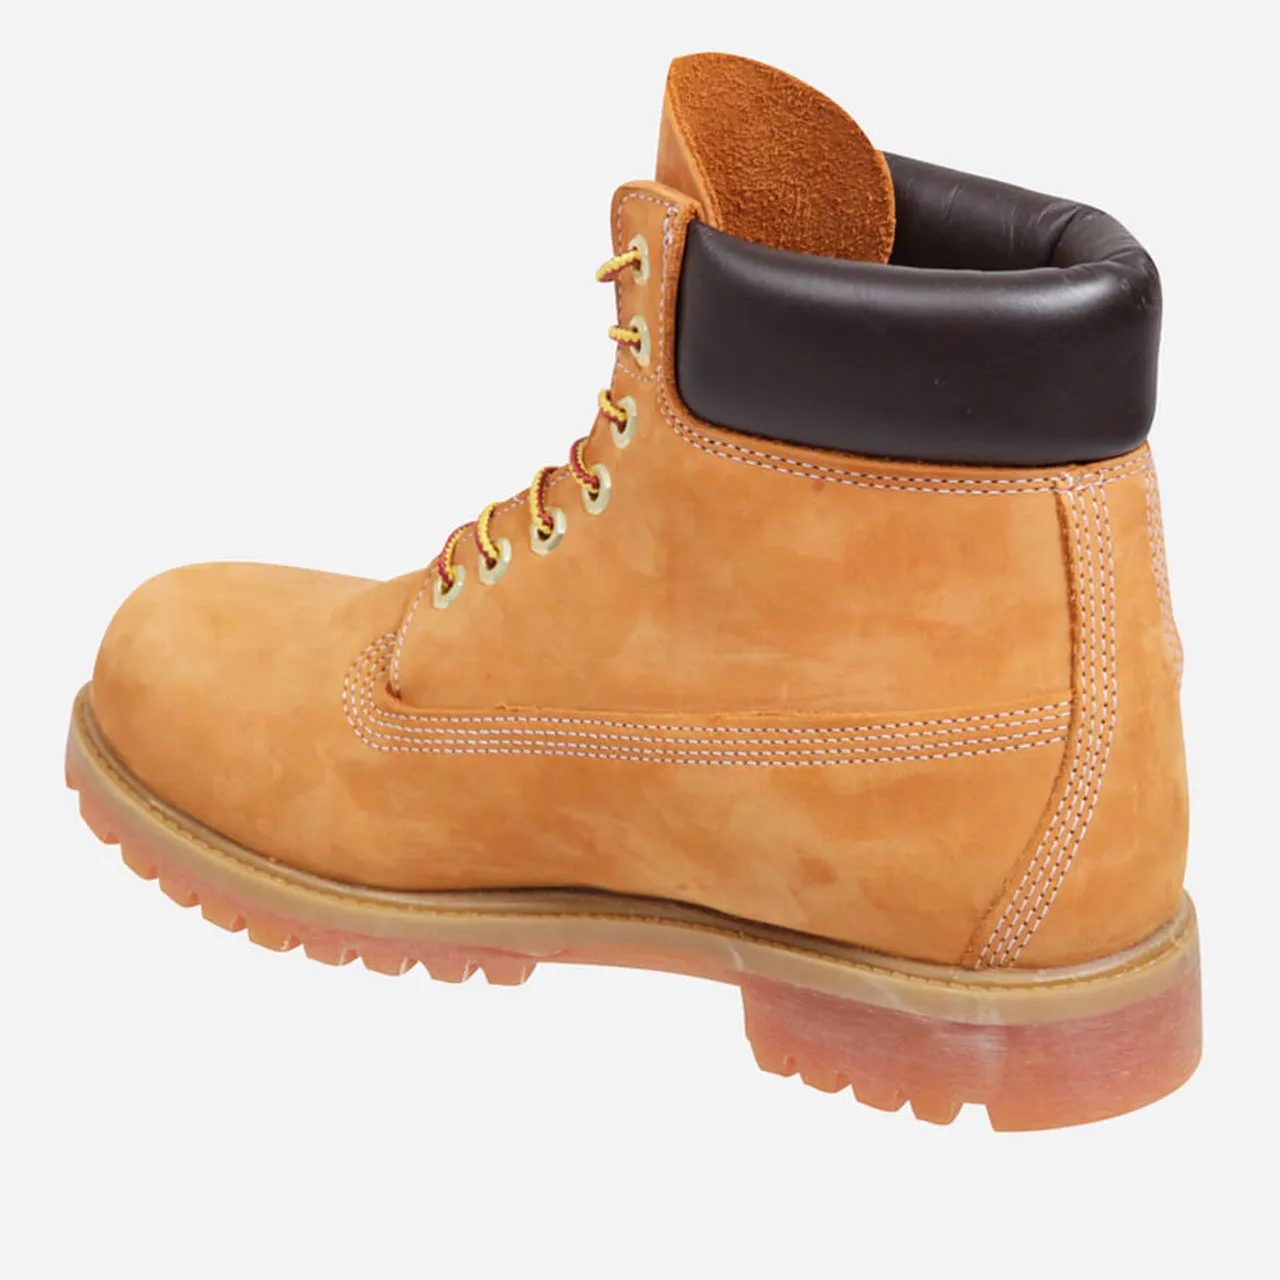 Timberland Men's 6 Inch Premium Waterproof Boots - Wheat - UK